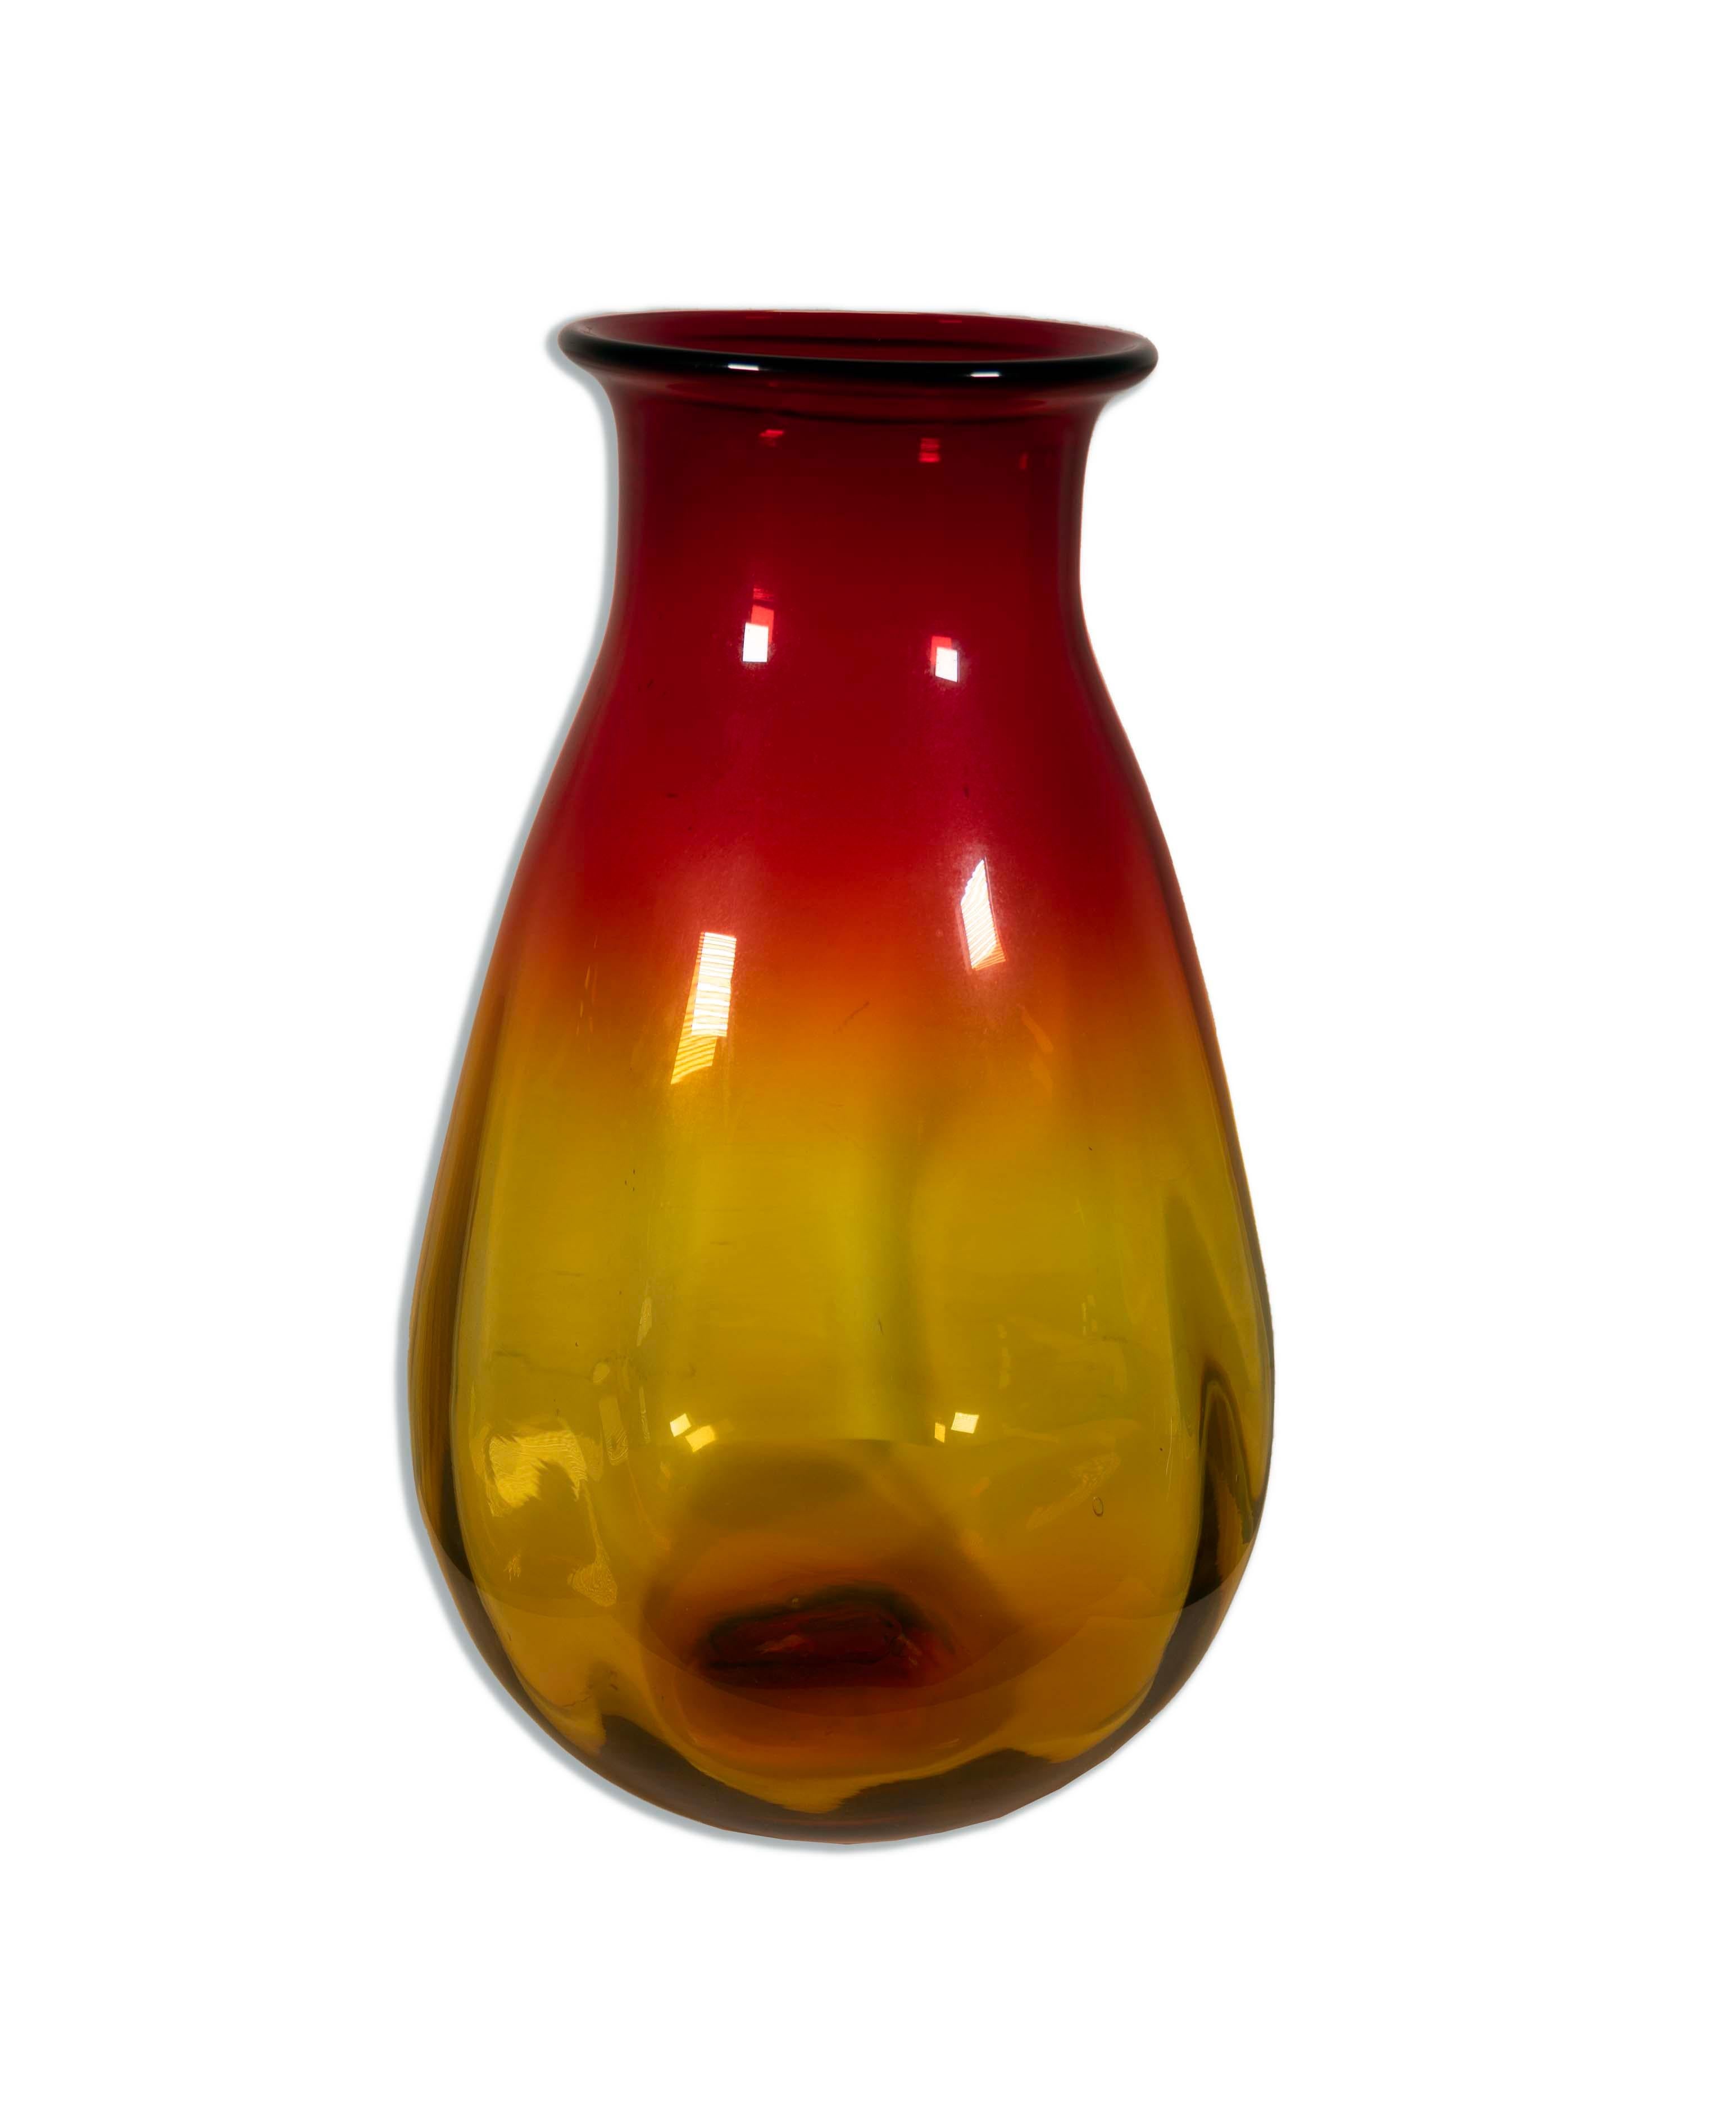 Die Joel Myers for Blenko Vase aus rotem und gelbem Glas, Modell 7029, ist ein bemerkenswertes Stück moderner Glaskunst aus der Mitte des Jahrhunderts. Diese von Joel Myers und der renommierten Blenko Glass Company gefertigte Vase besticht durch